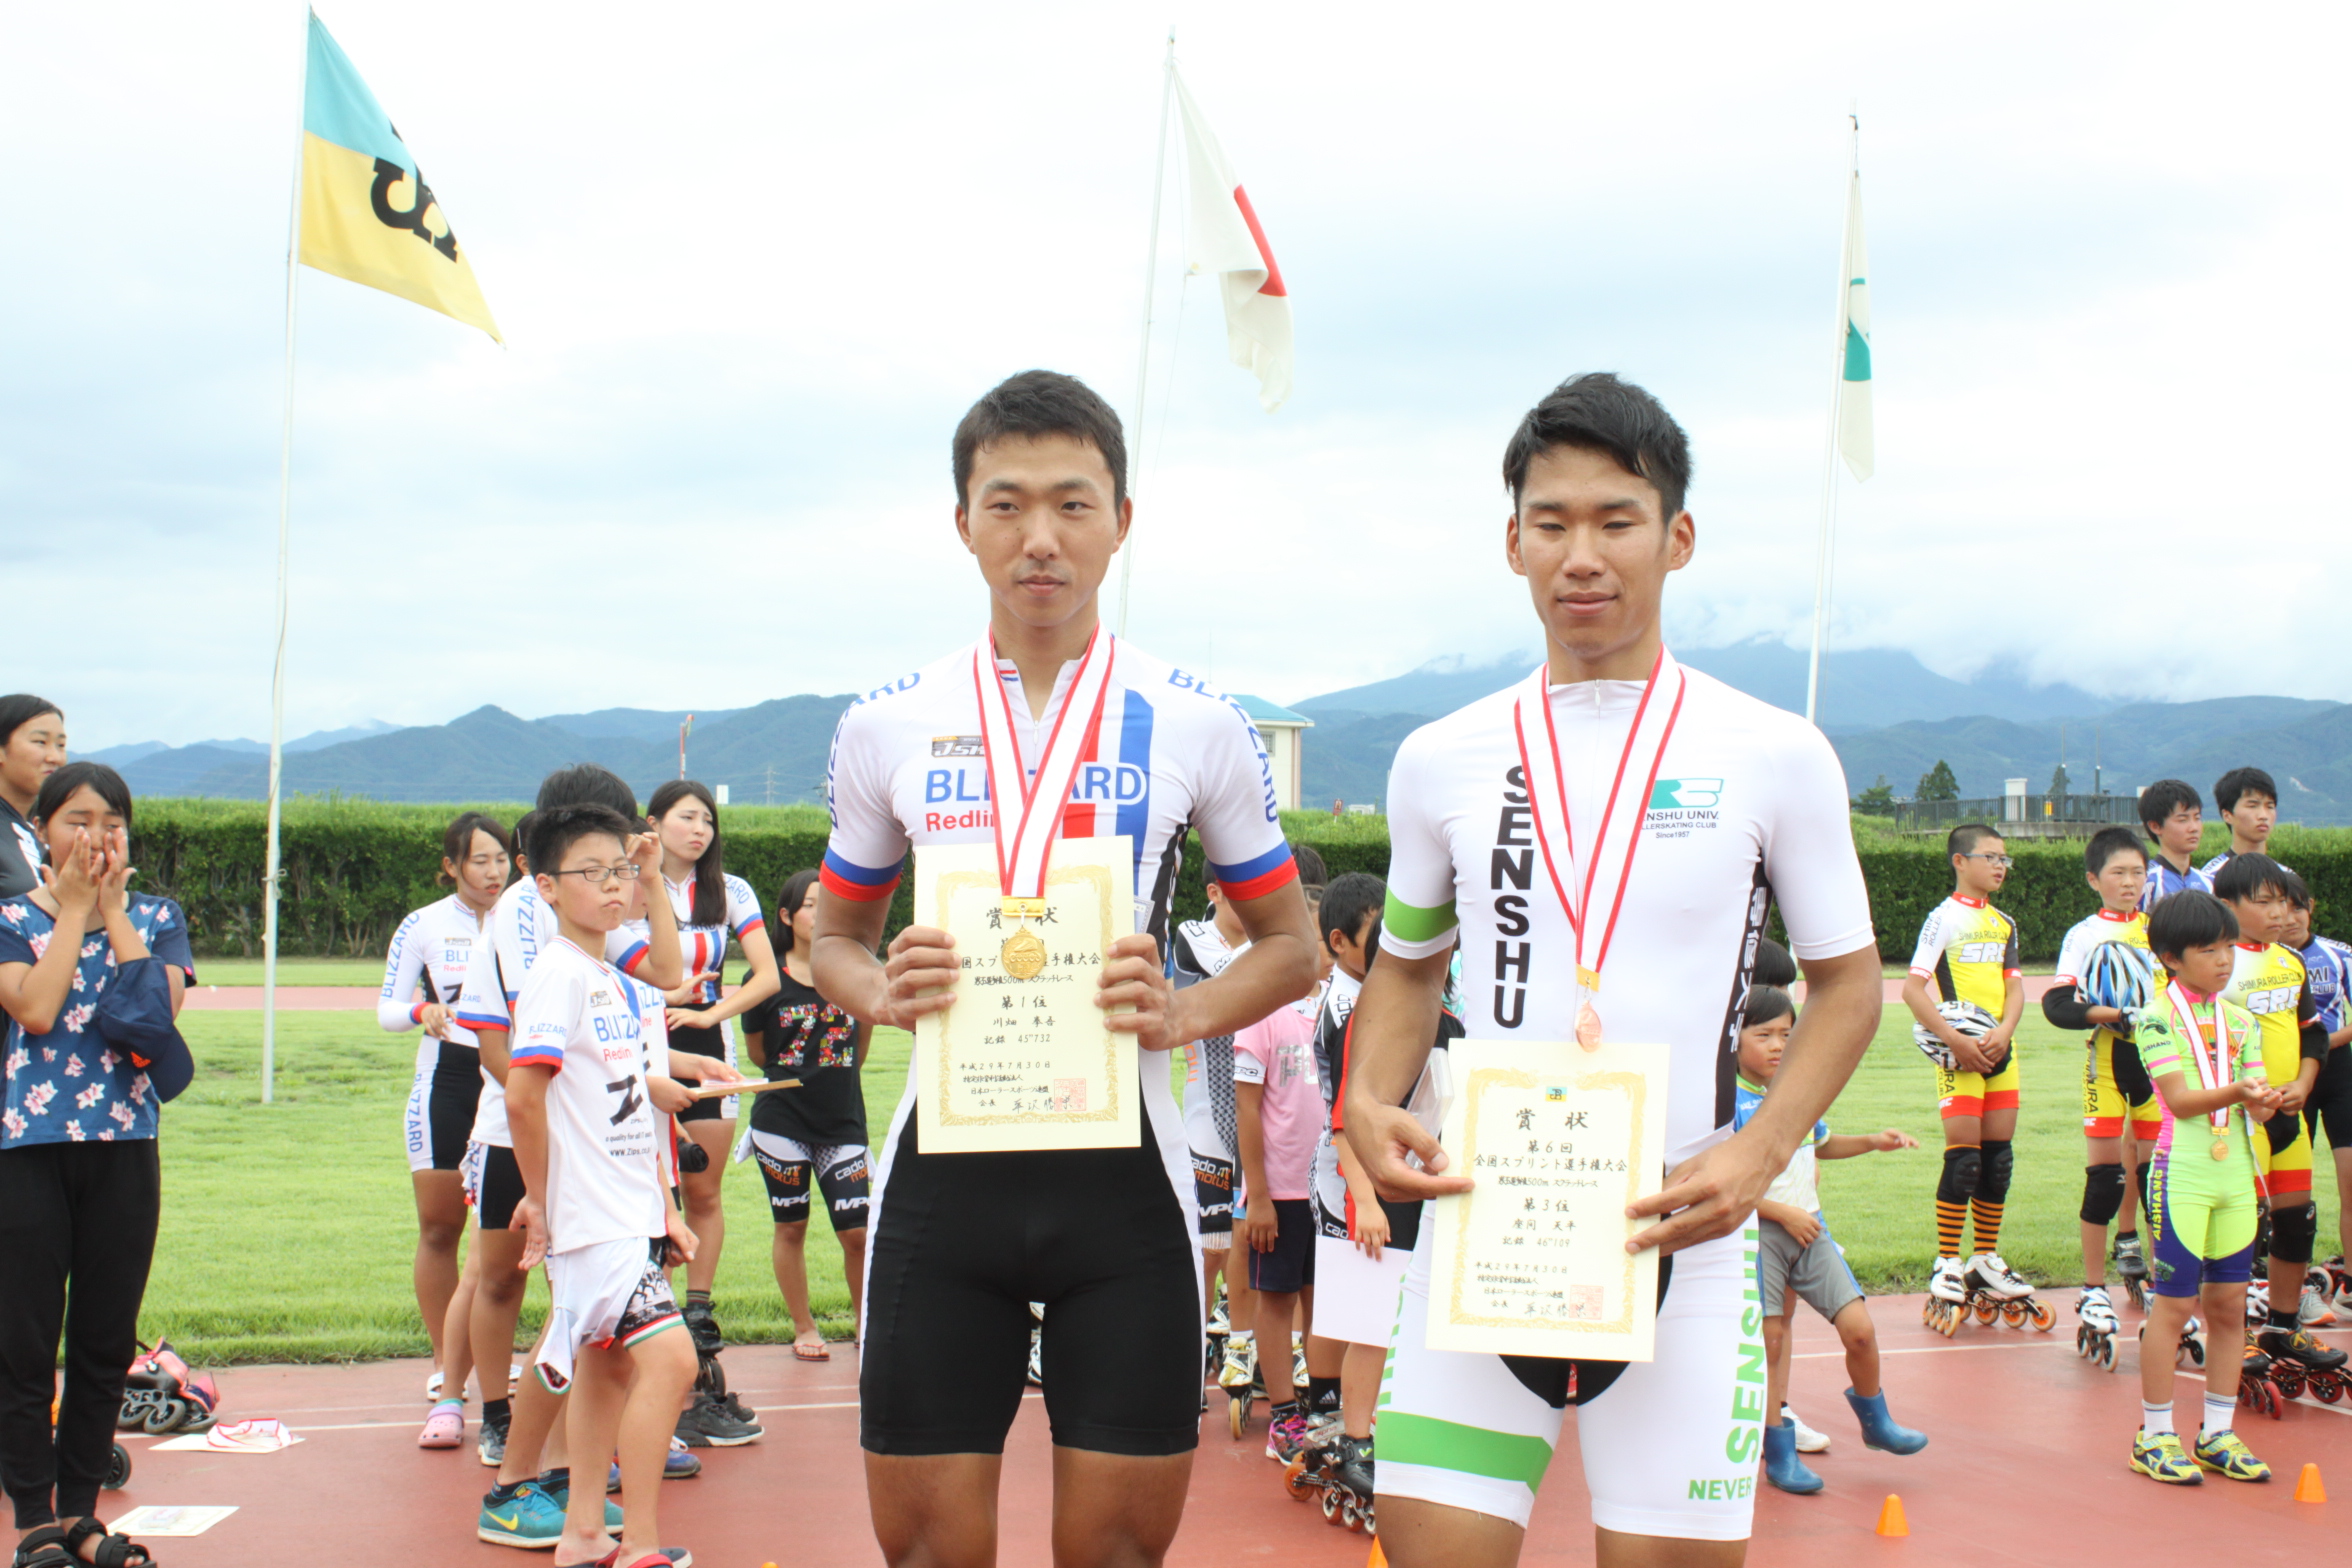 男子500mスクラッチレースでは、川畑拳吾（ブリザードクラブ）が優勝しました。